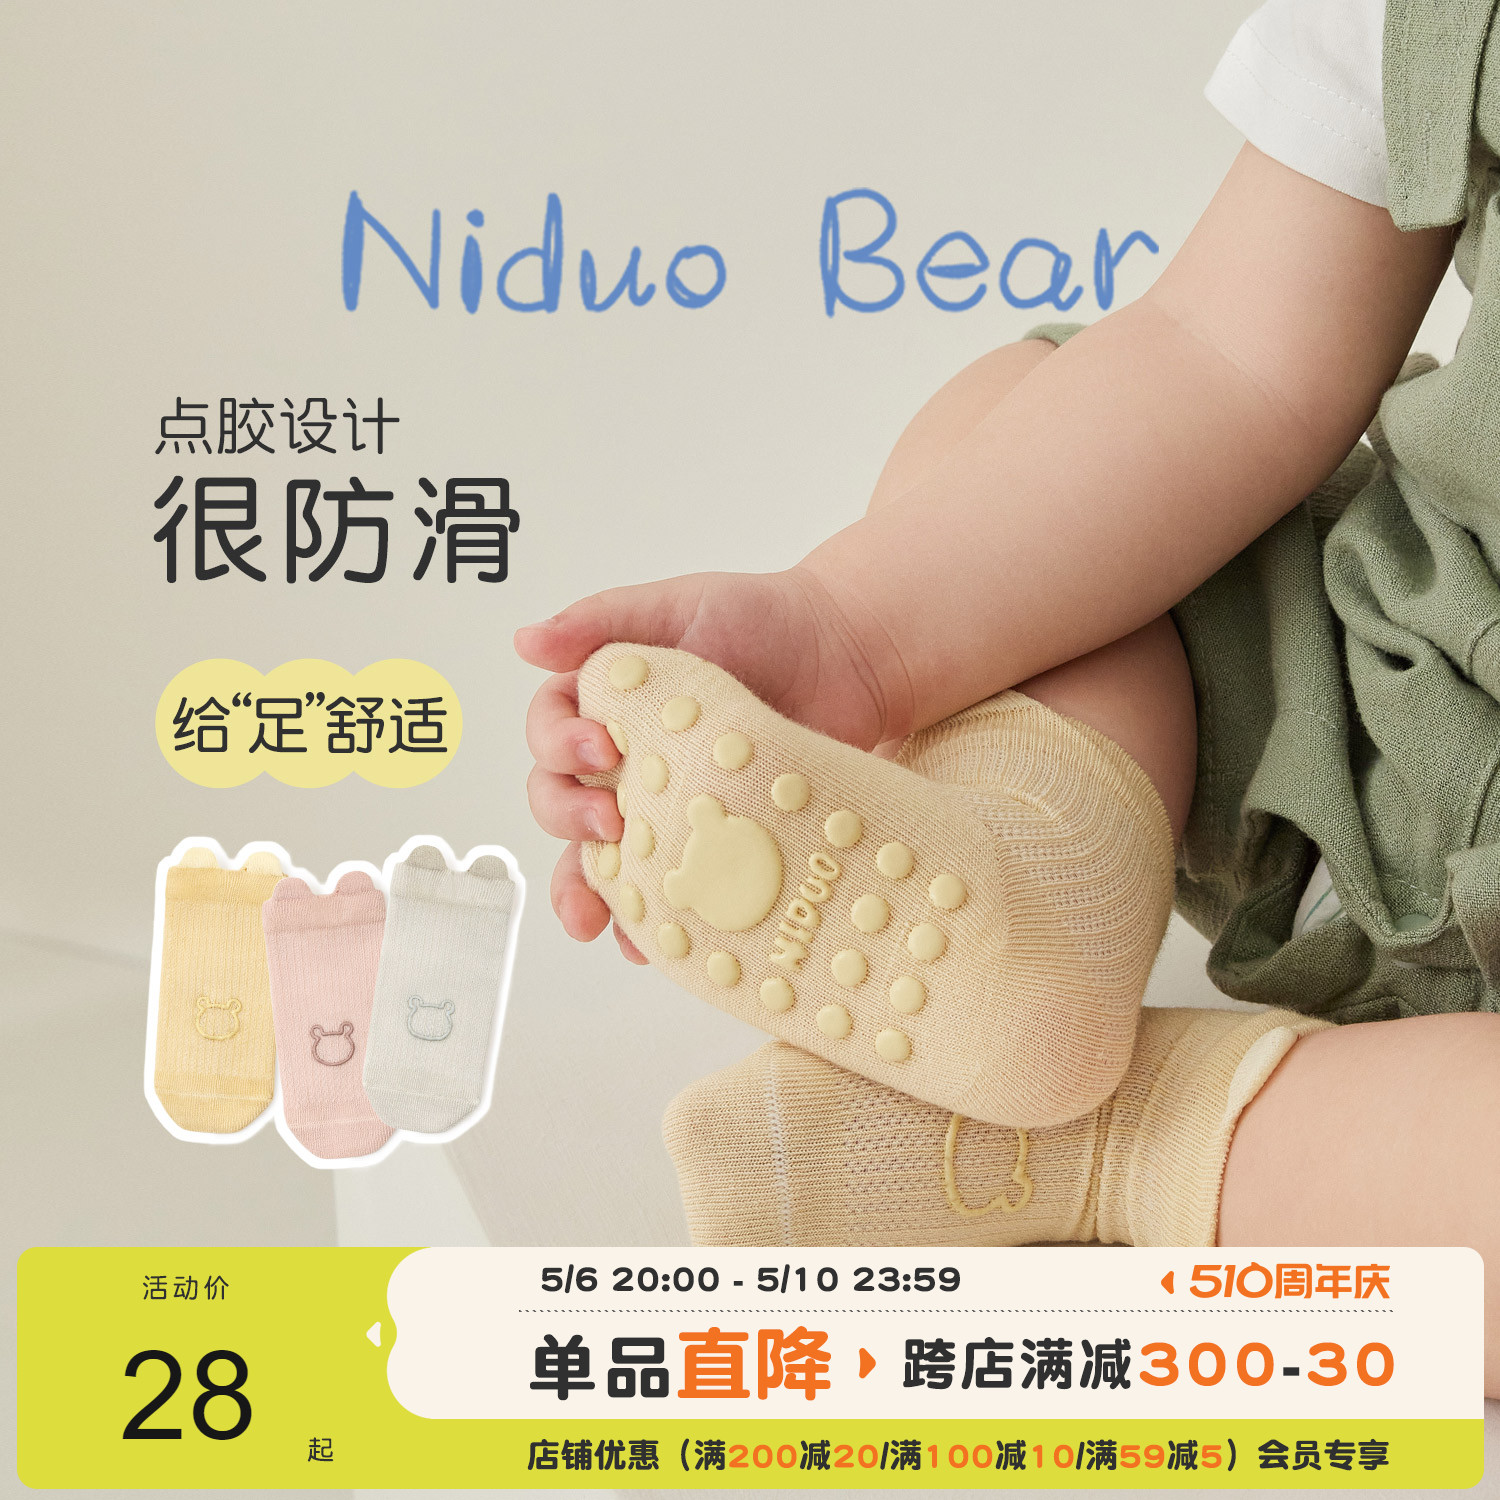 尼多熊宝宝地板袜夏季薄款室内婴儿学步袜防滑袜子隔凉儿童点胶袜